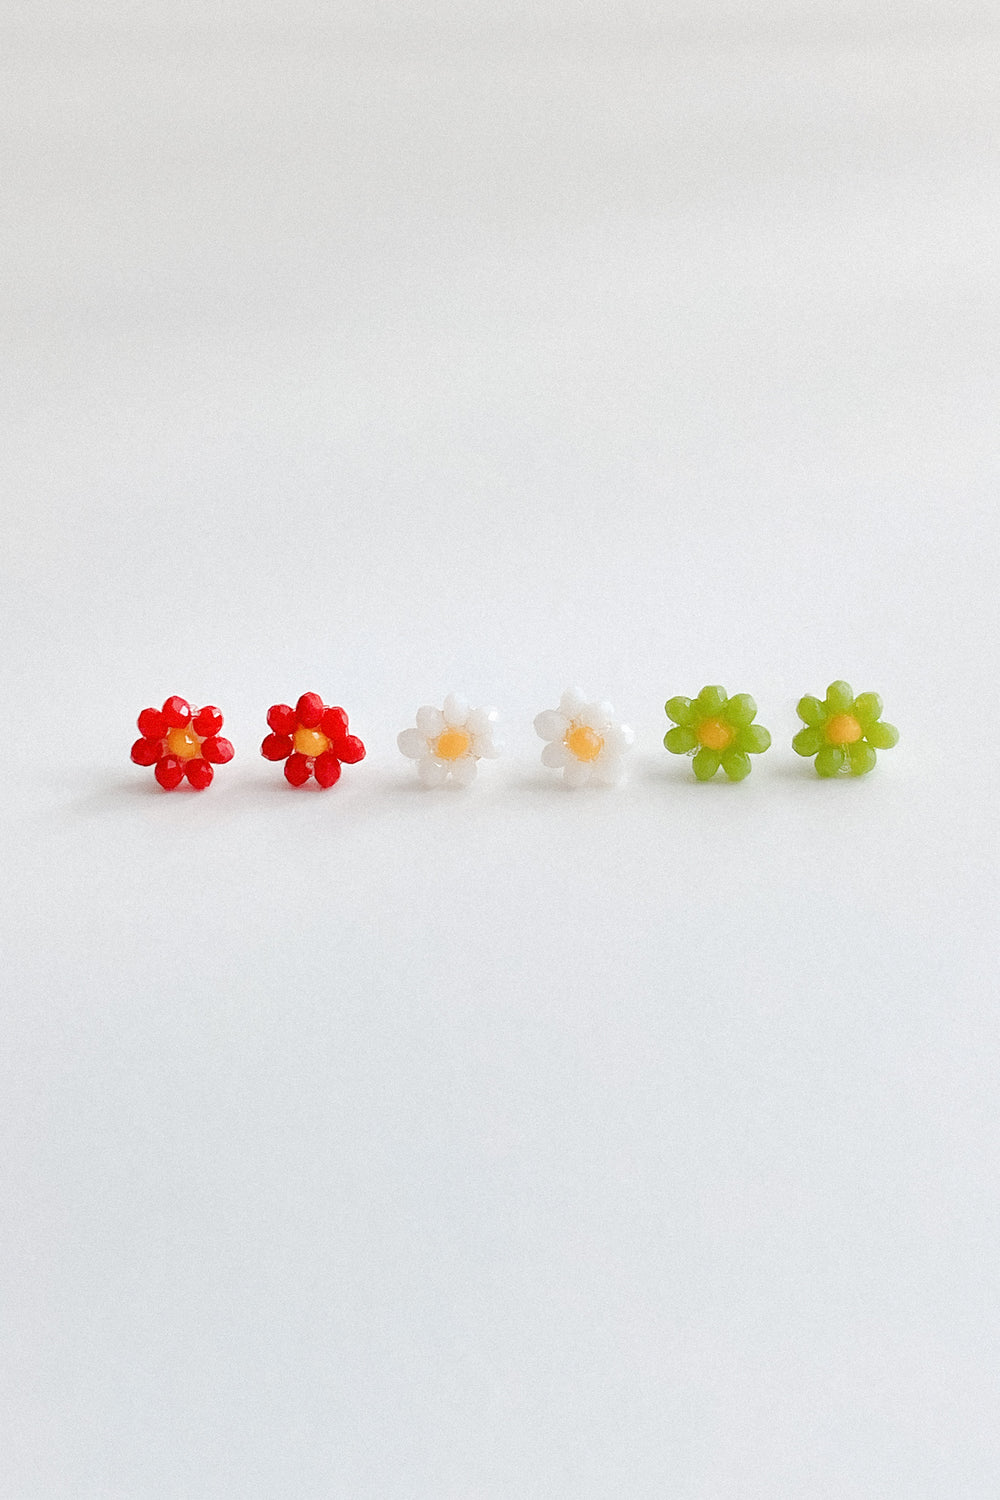 22369 - Sun Flower Earrings